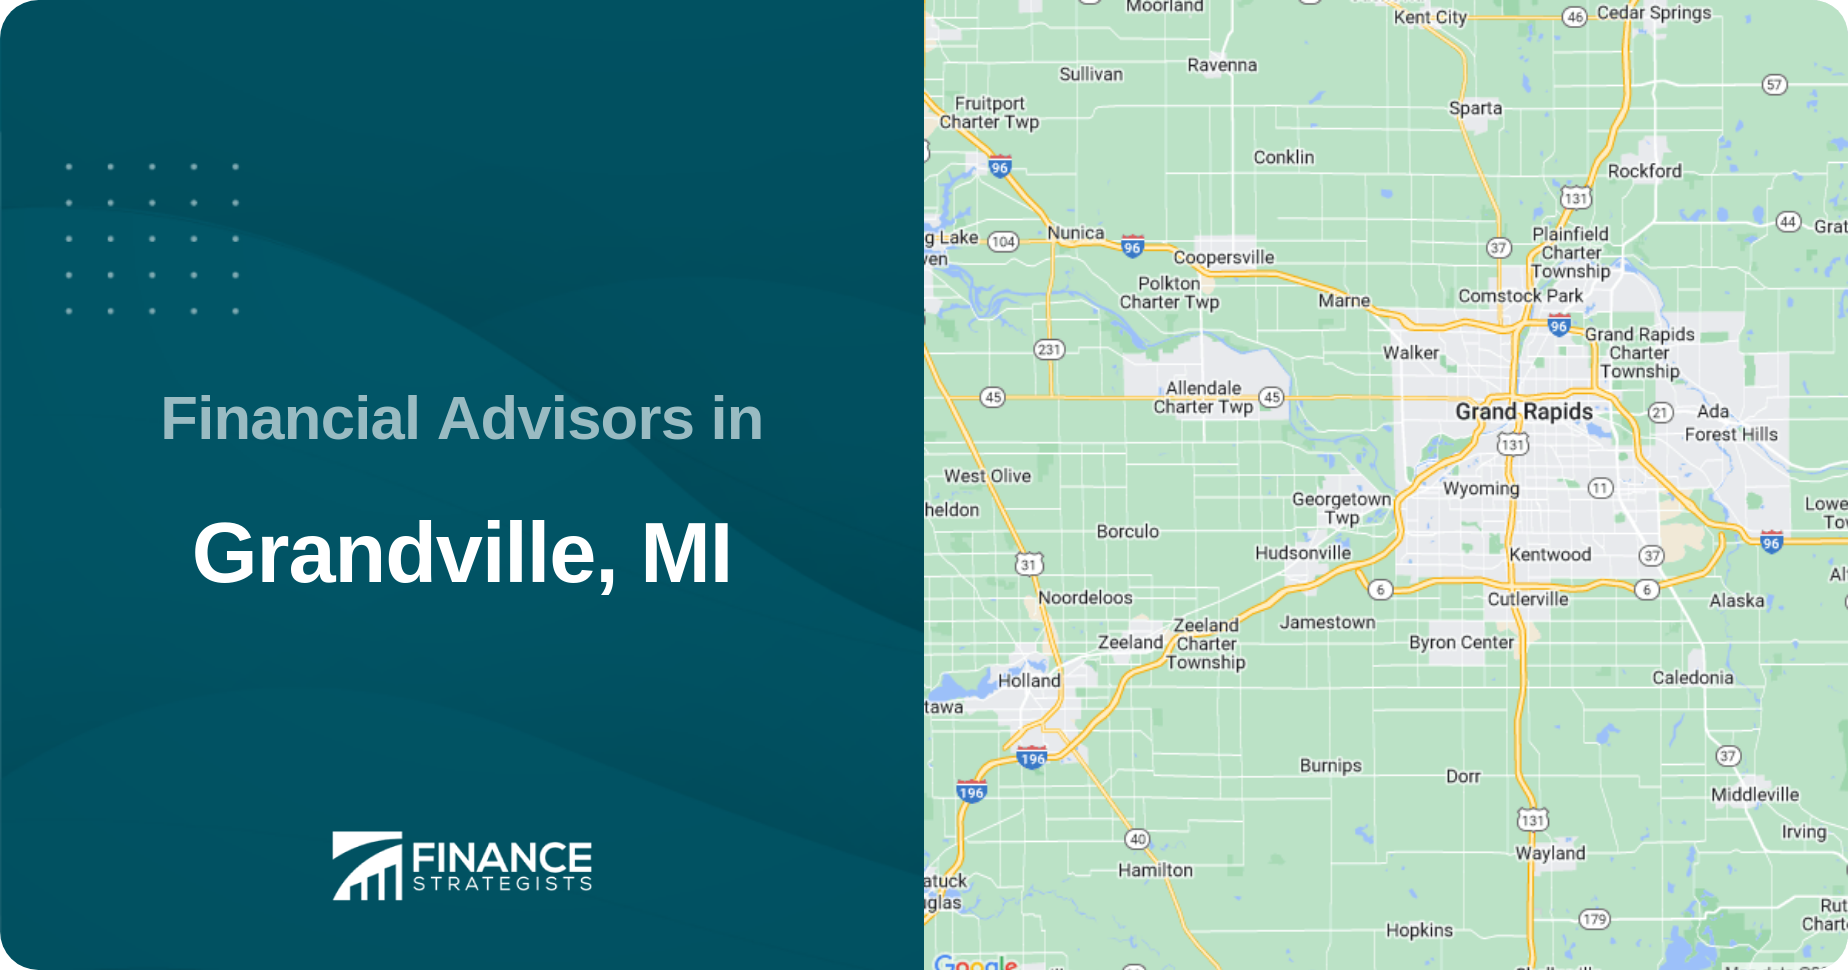 Financial Advisors in Grandville, MI